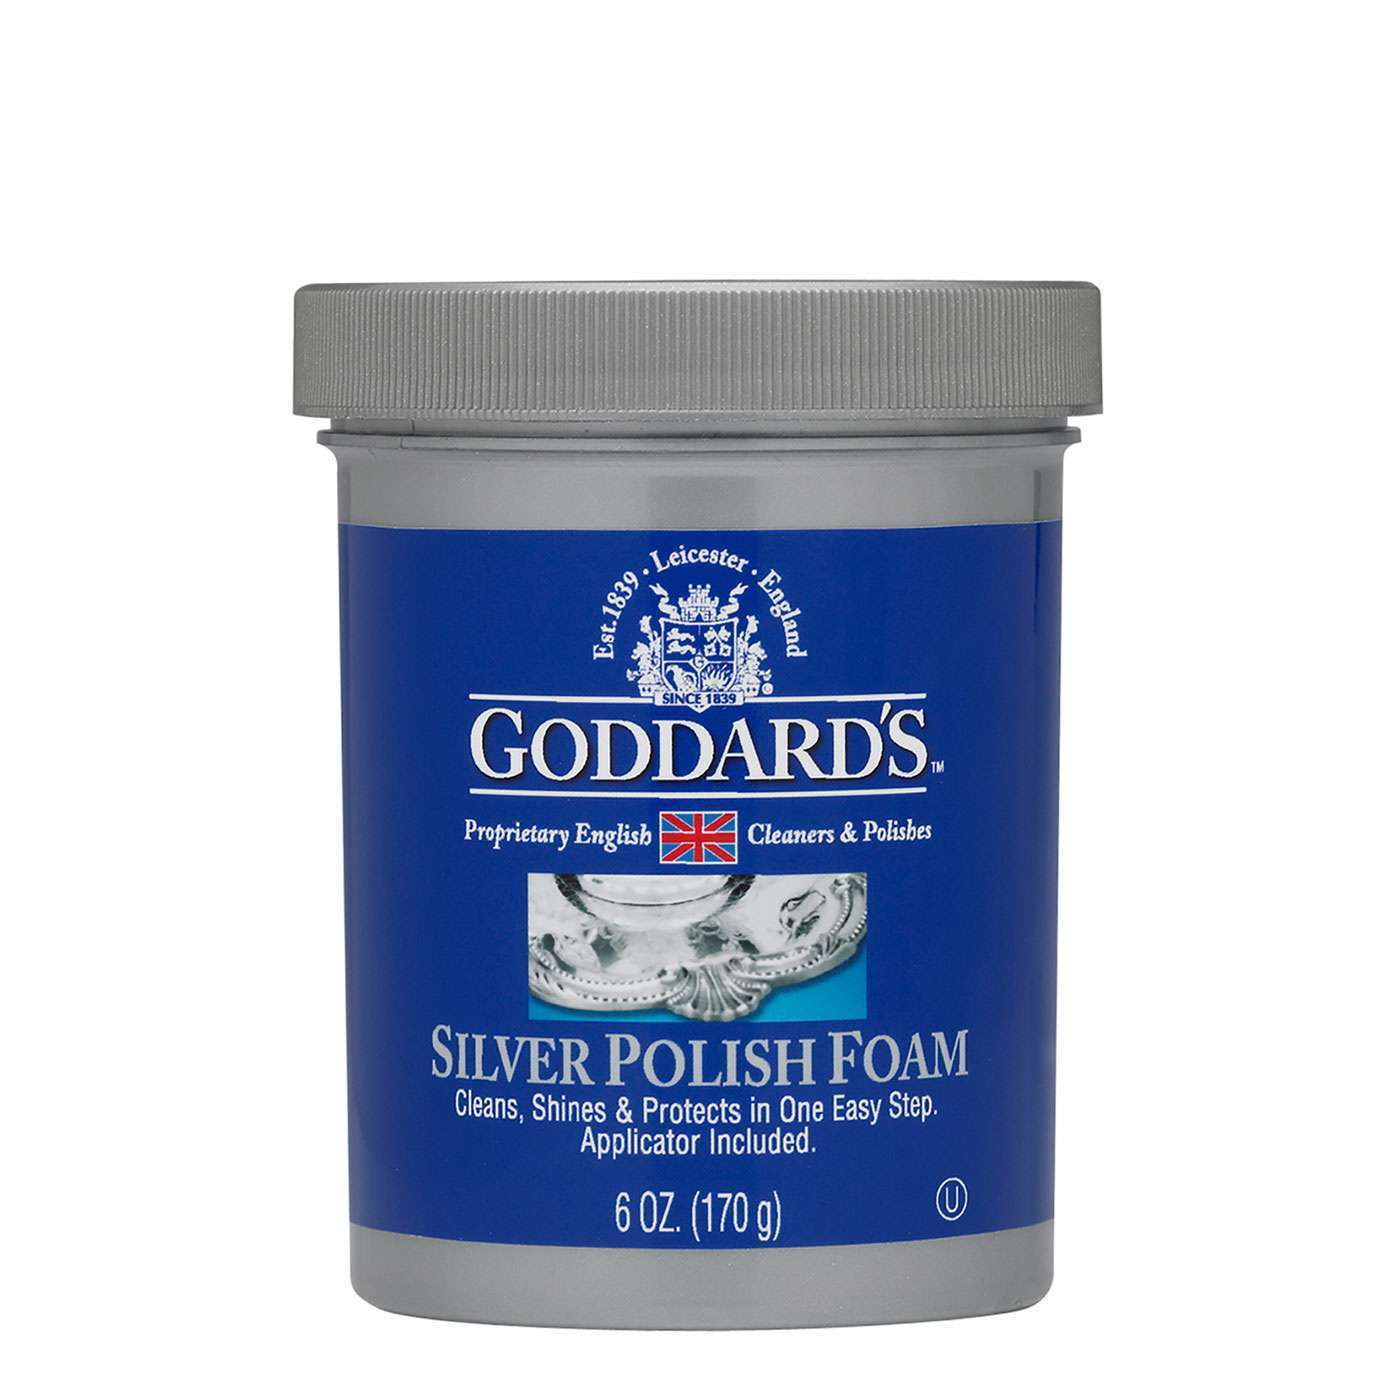 Goddard's 707085 Silver Polish Foam, 6 oz, Paste, Chemical, Slight Sulfur, Reddish Brown - 1